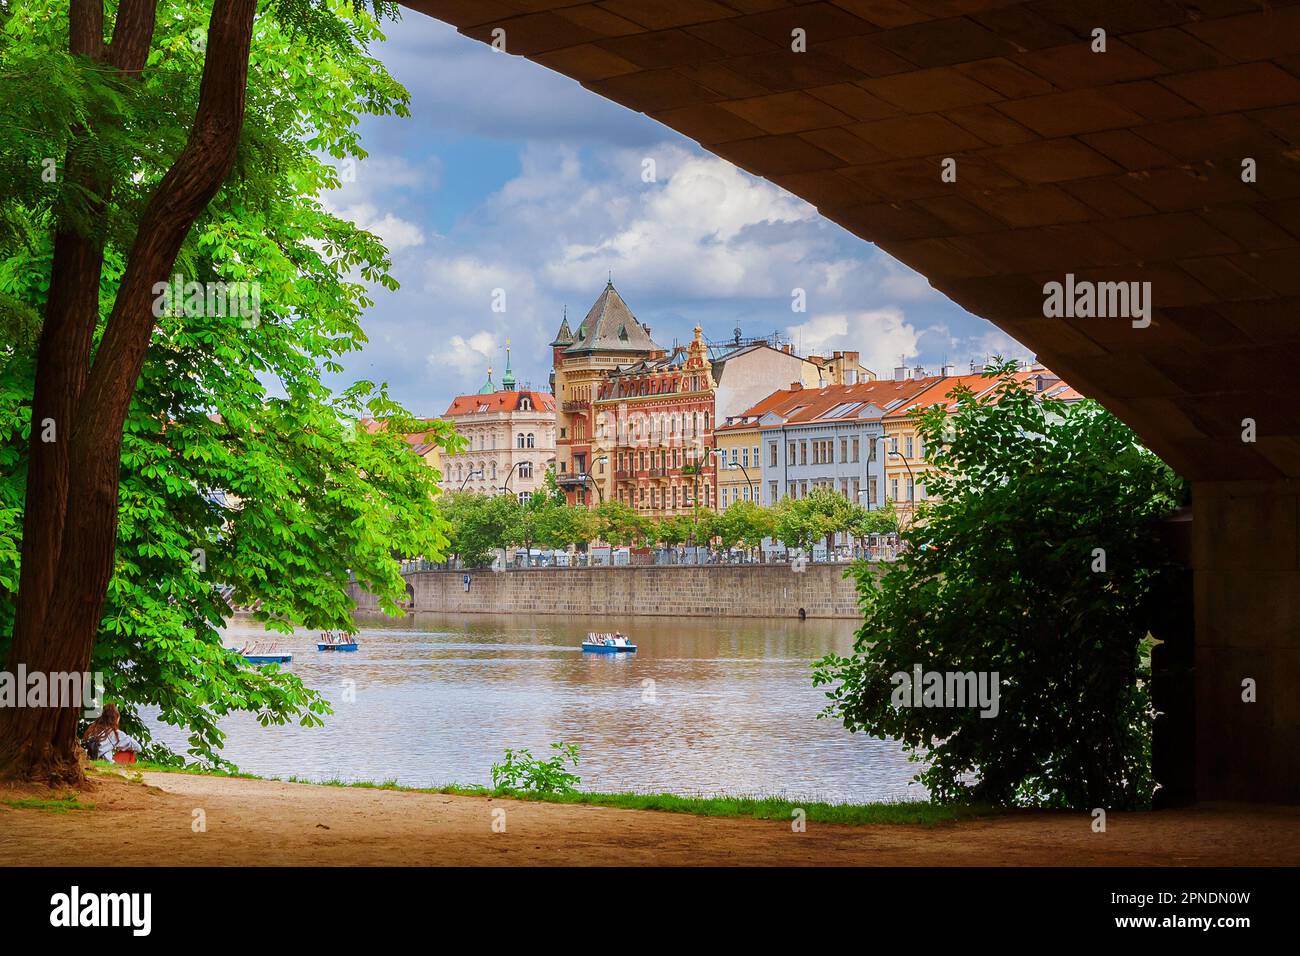 Vue sur le centre historique de Prague et le bord de la rivière depuis l'arche du pont de la légion sur le parc public de l'île Strelecky Banque D'Images